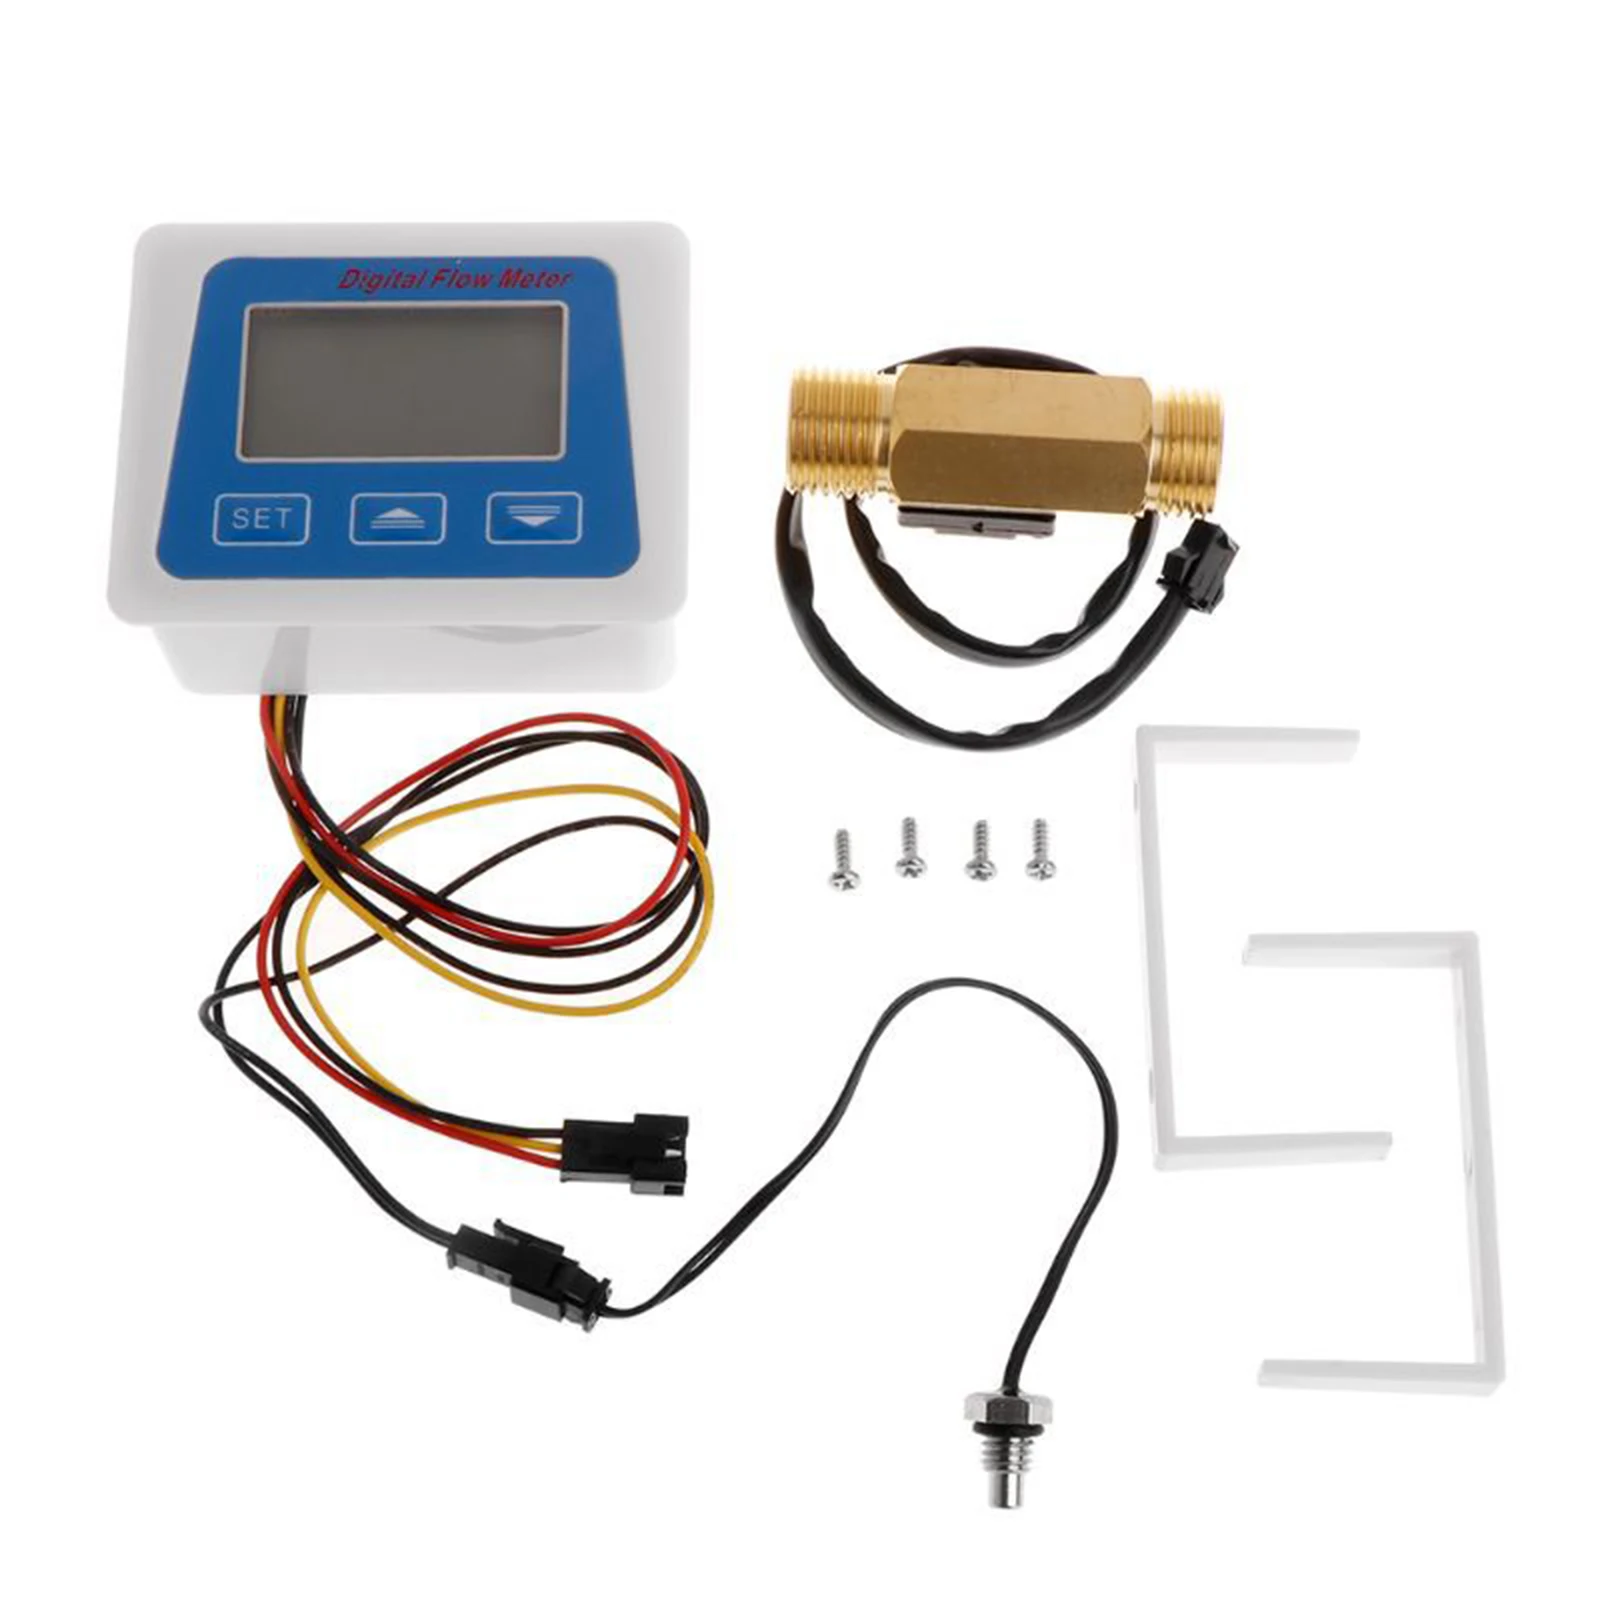 Digital Flow Meter Digital Display Flow Gauge With G1/2 Flow Sensor Flow Meter Totameter Electronic Water Meter Temperature Time